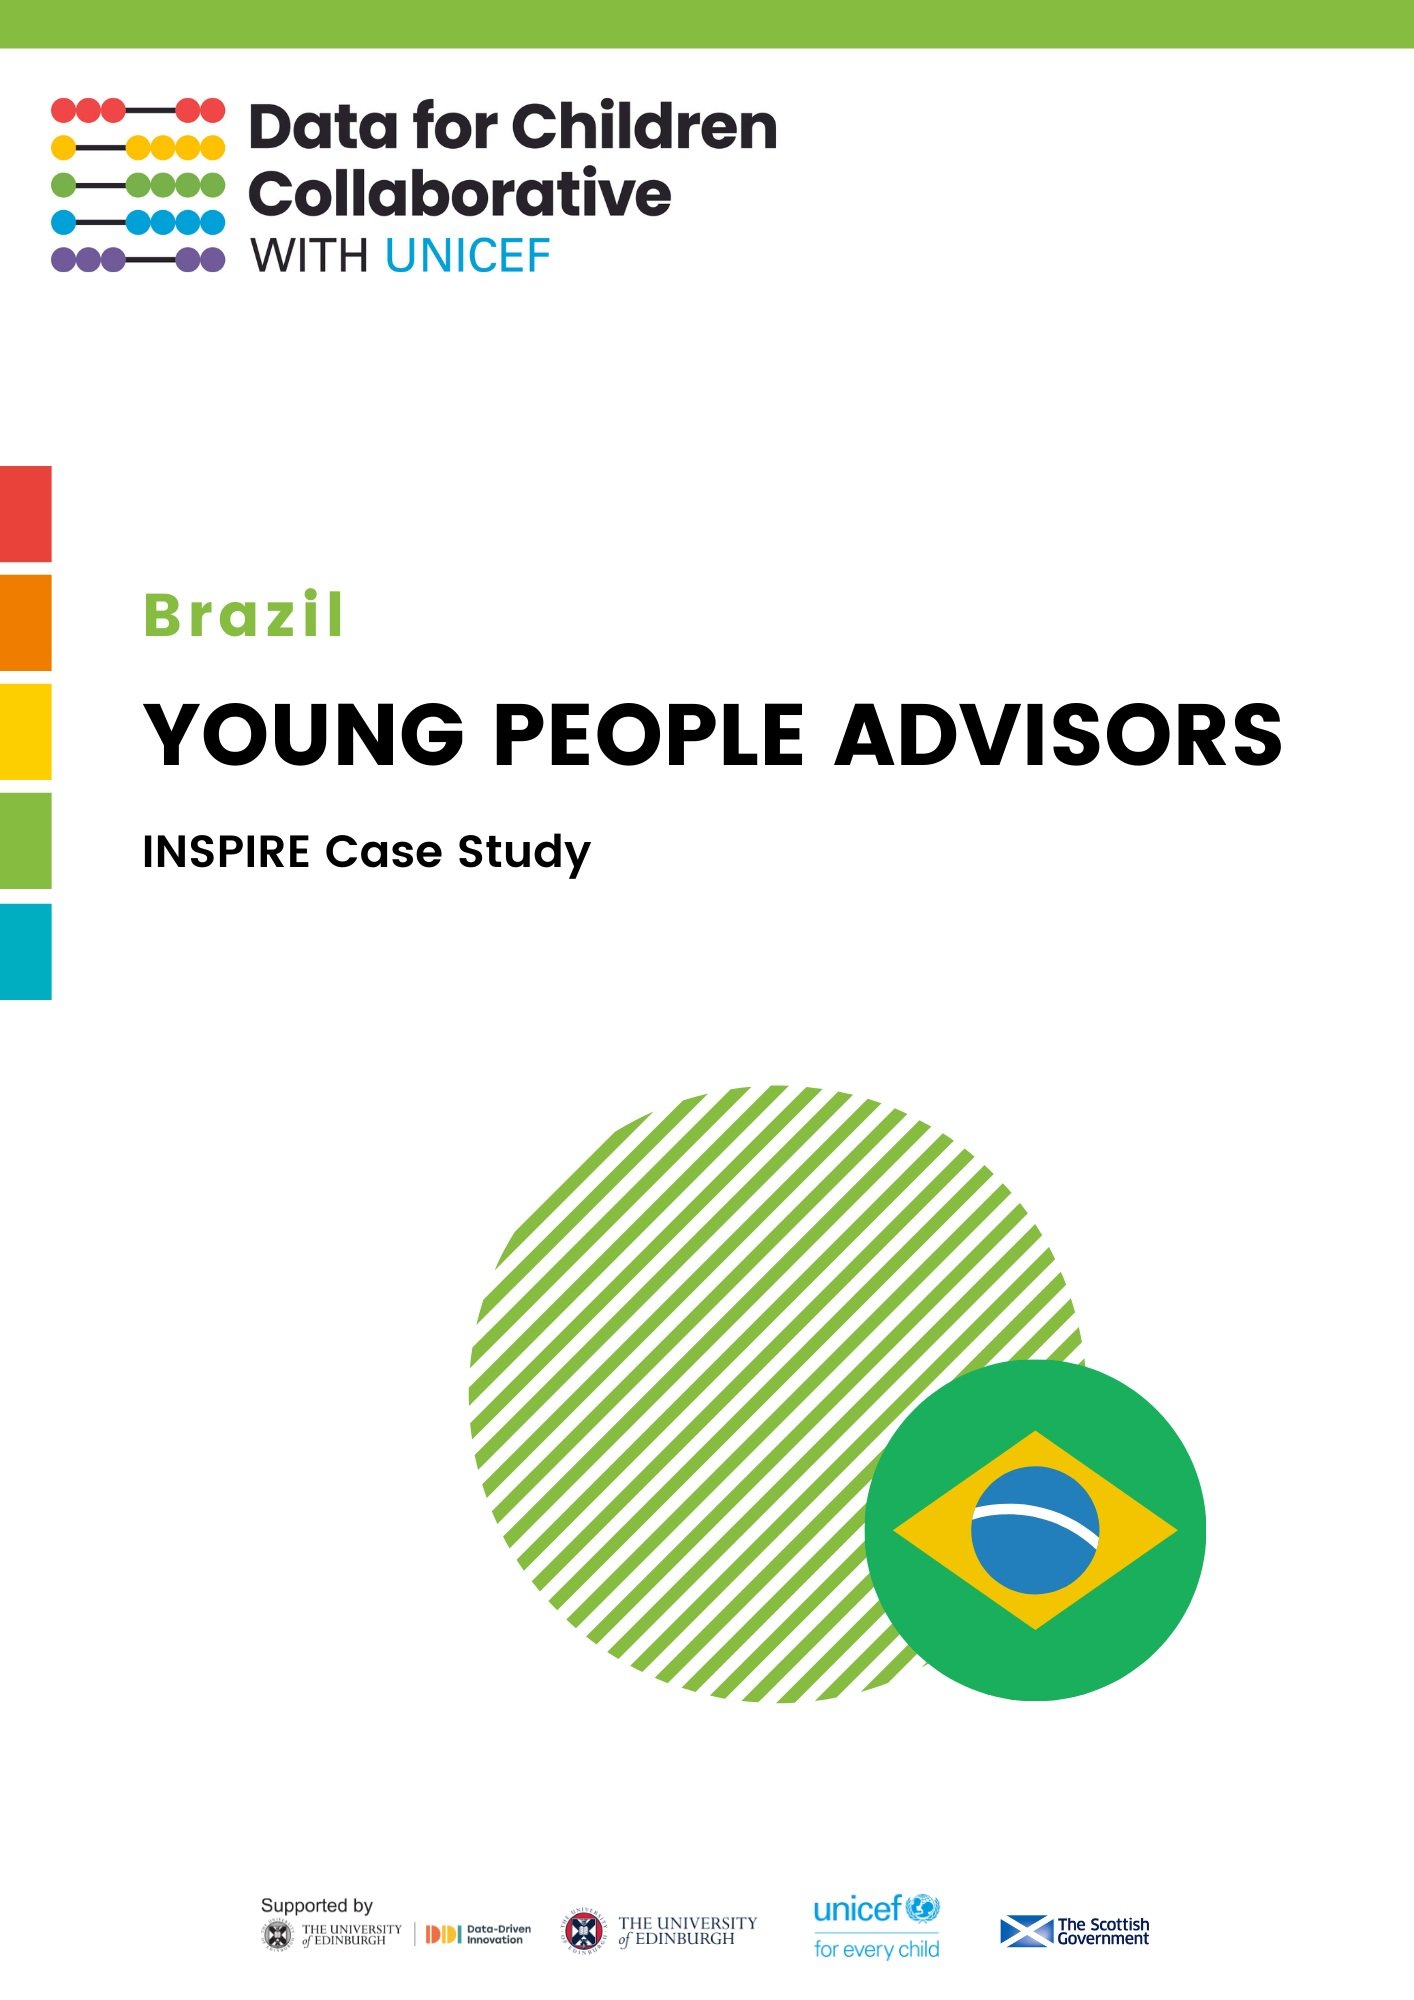 Brazil YPA Case Study (Copy)